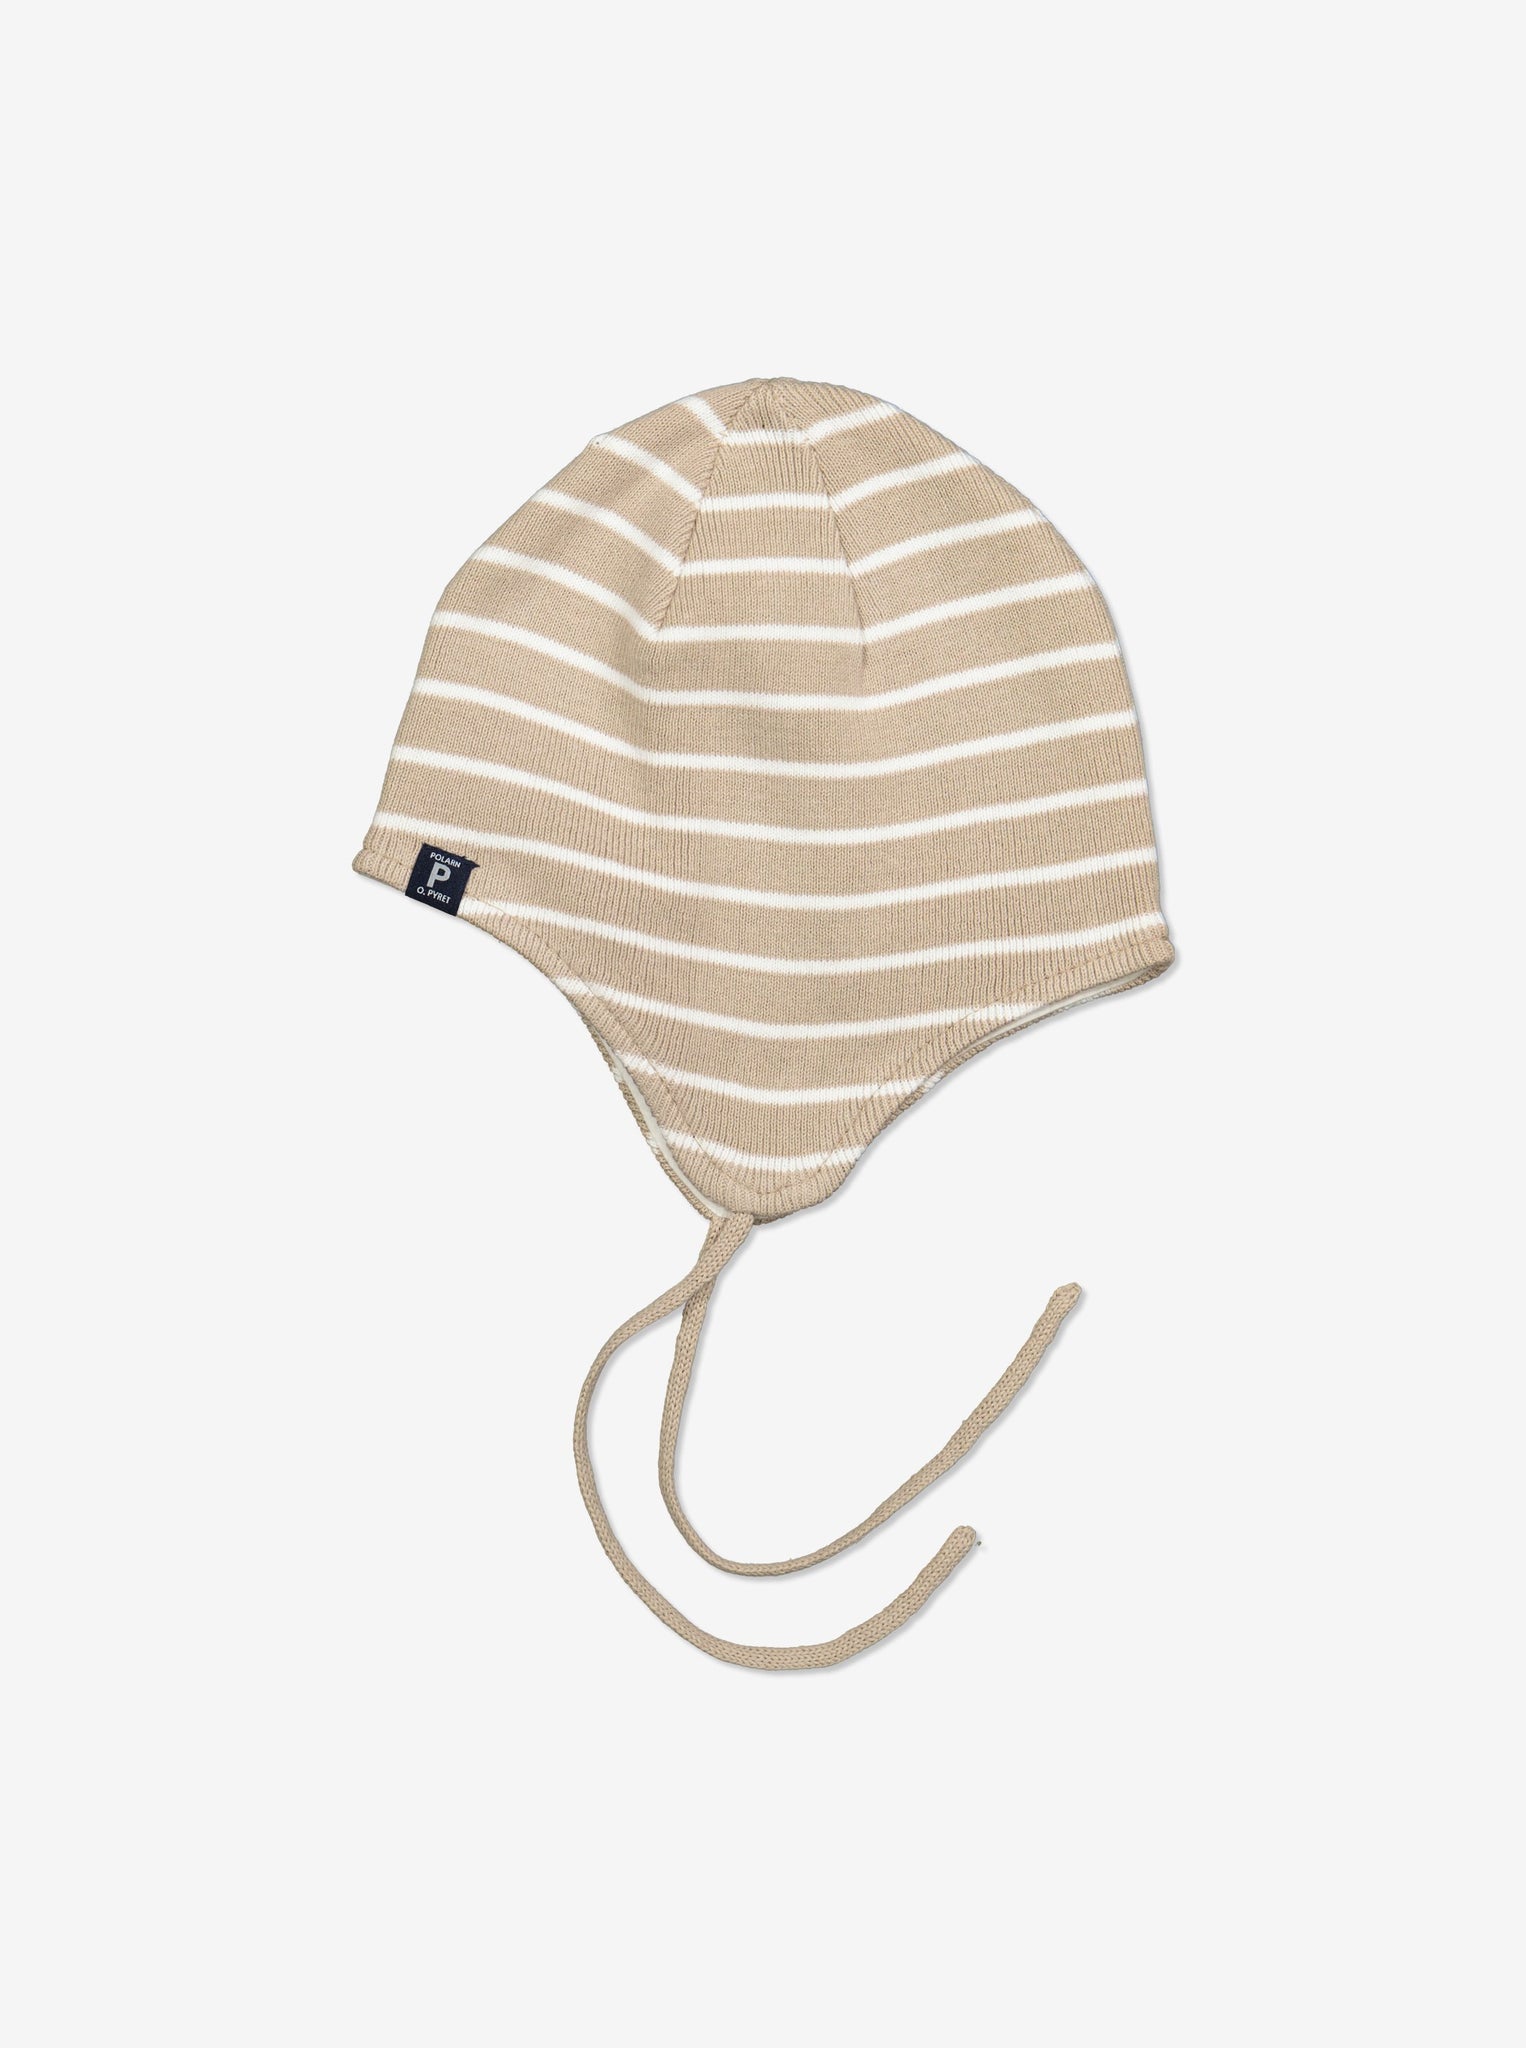 Striped Beige Baby Beanie Hat from Polarn O. Pyret Kidswear. Warm kids beanie